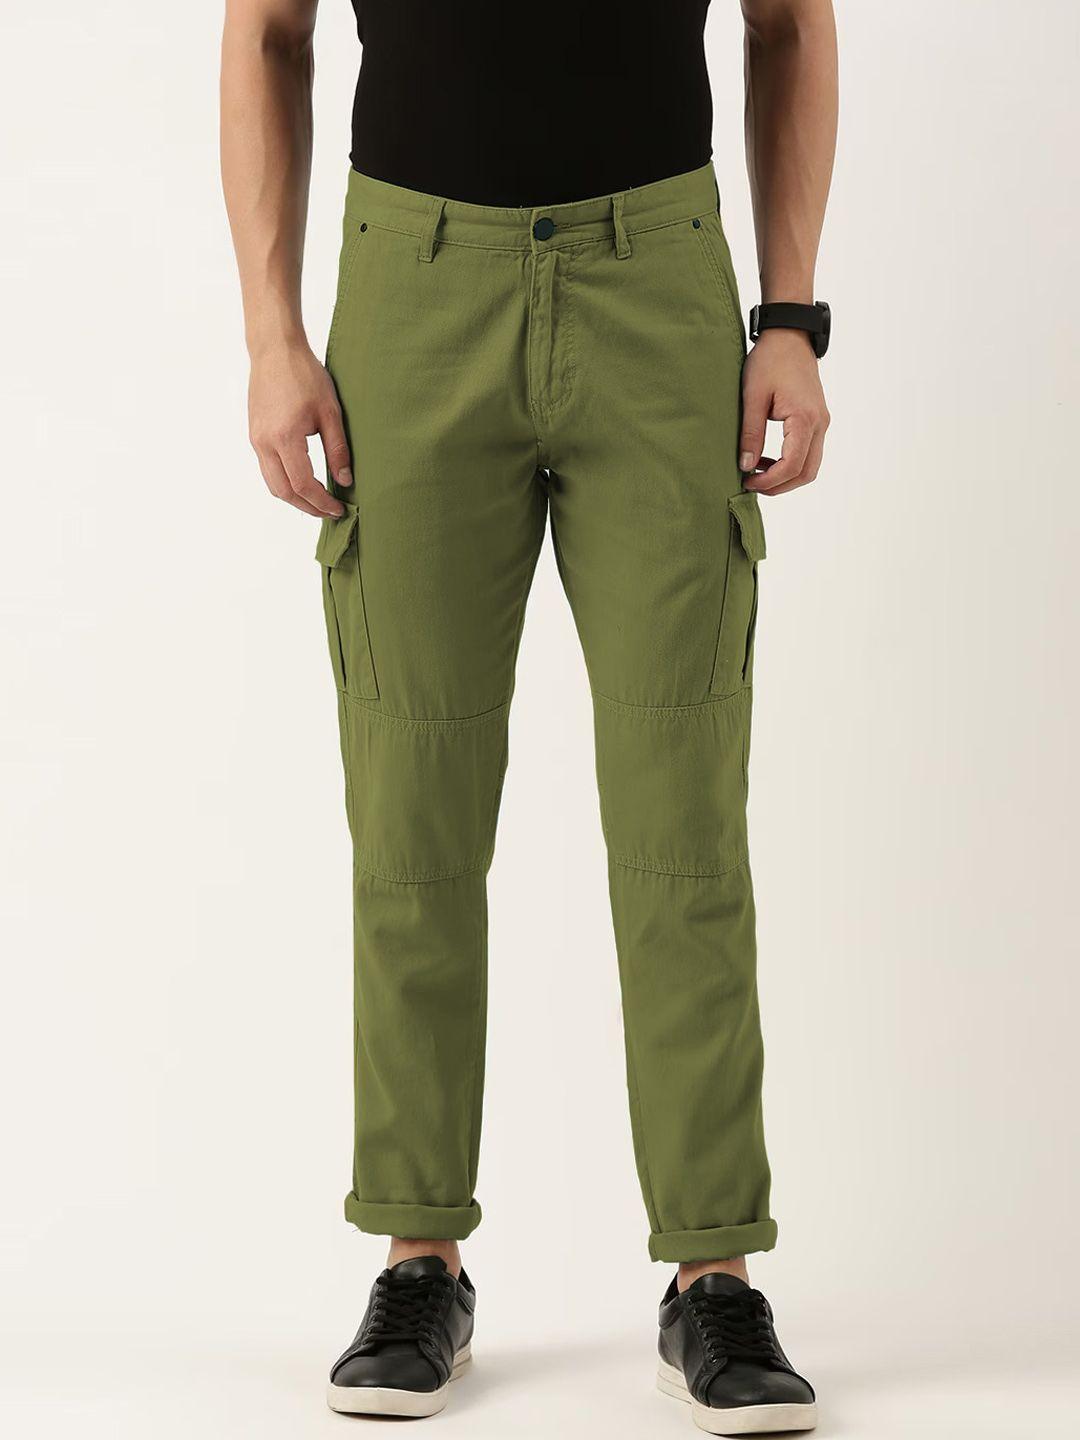 ivoc-men-mid-rise-plain-pure-cotton-slim-fit-cargos-trousers